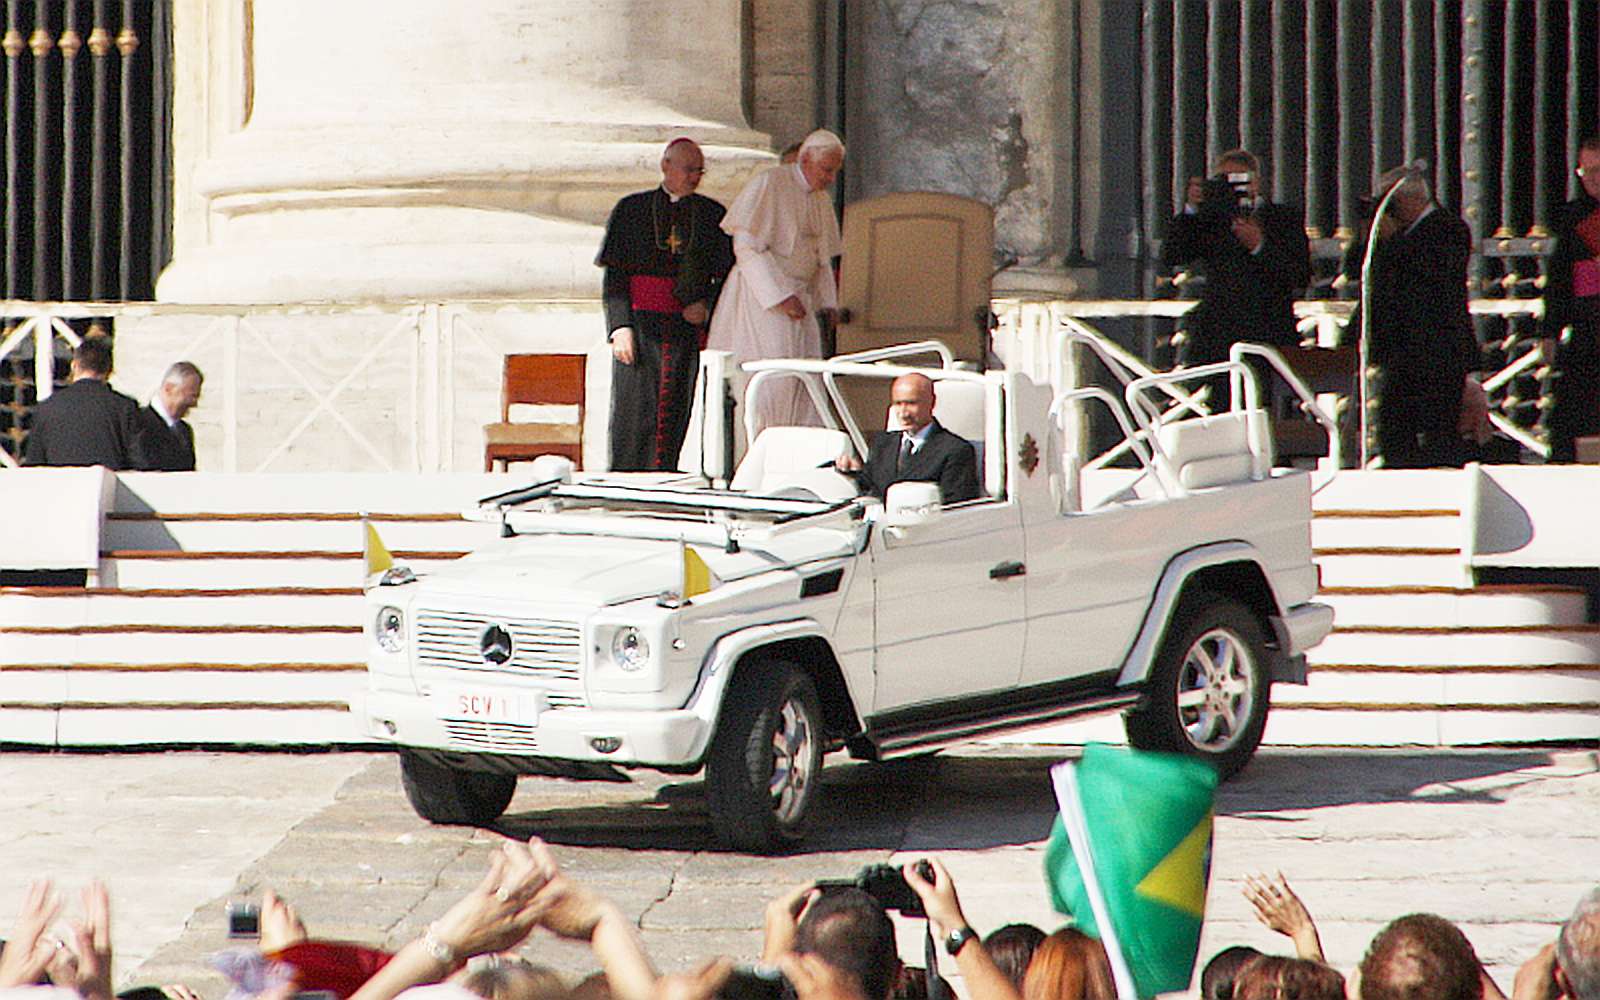 Roma | Pope Benedict XVI